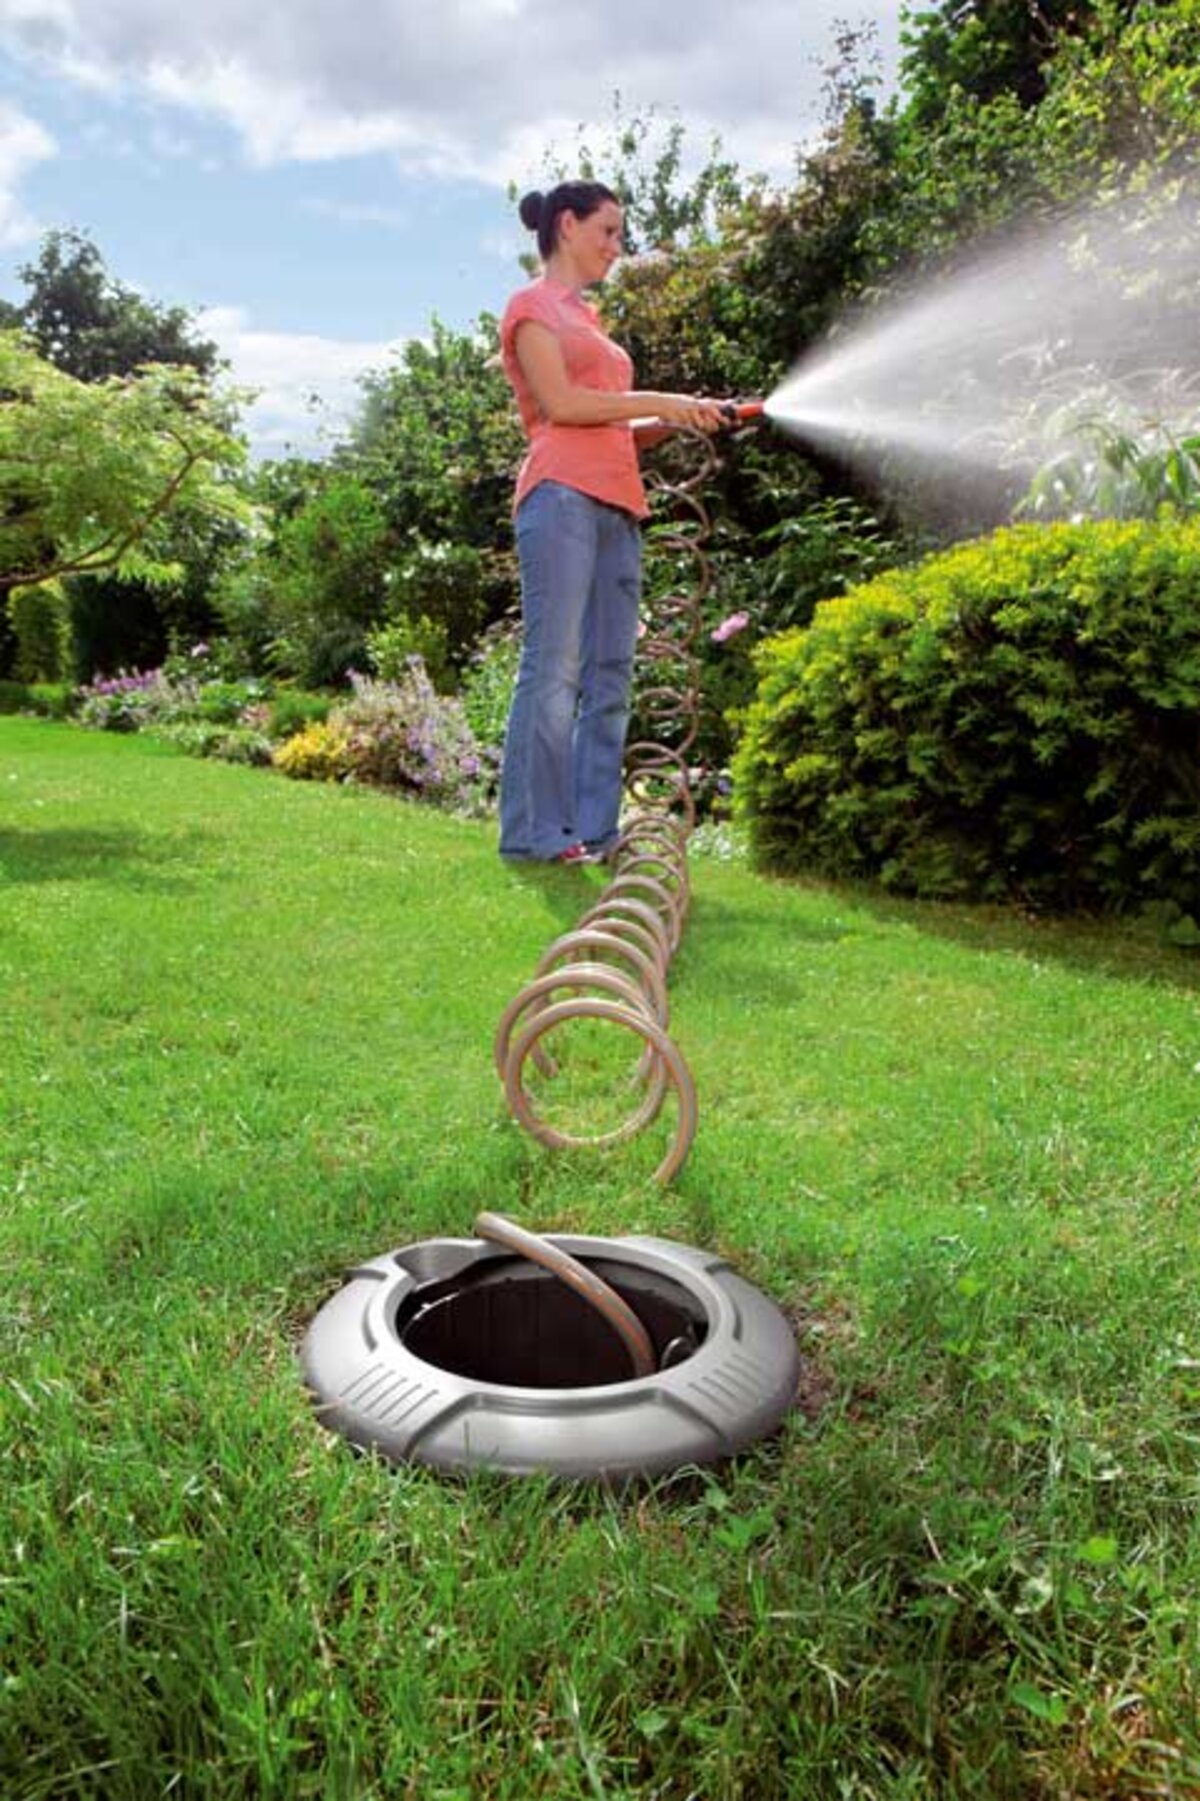 ik heb honger Alternatief voorstel rollen Gardena spiraalslangenbox: Slimme tuinslang onder de grond